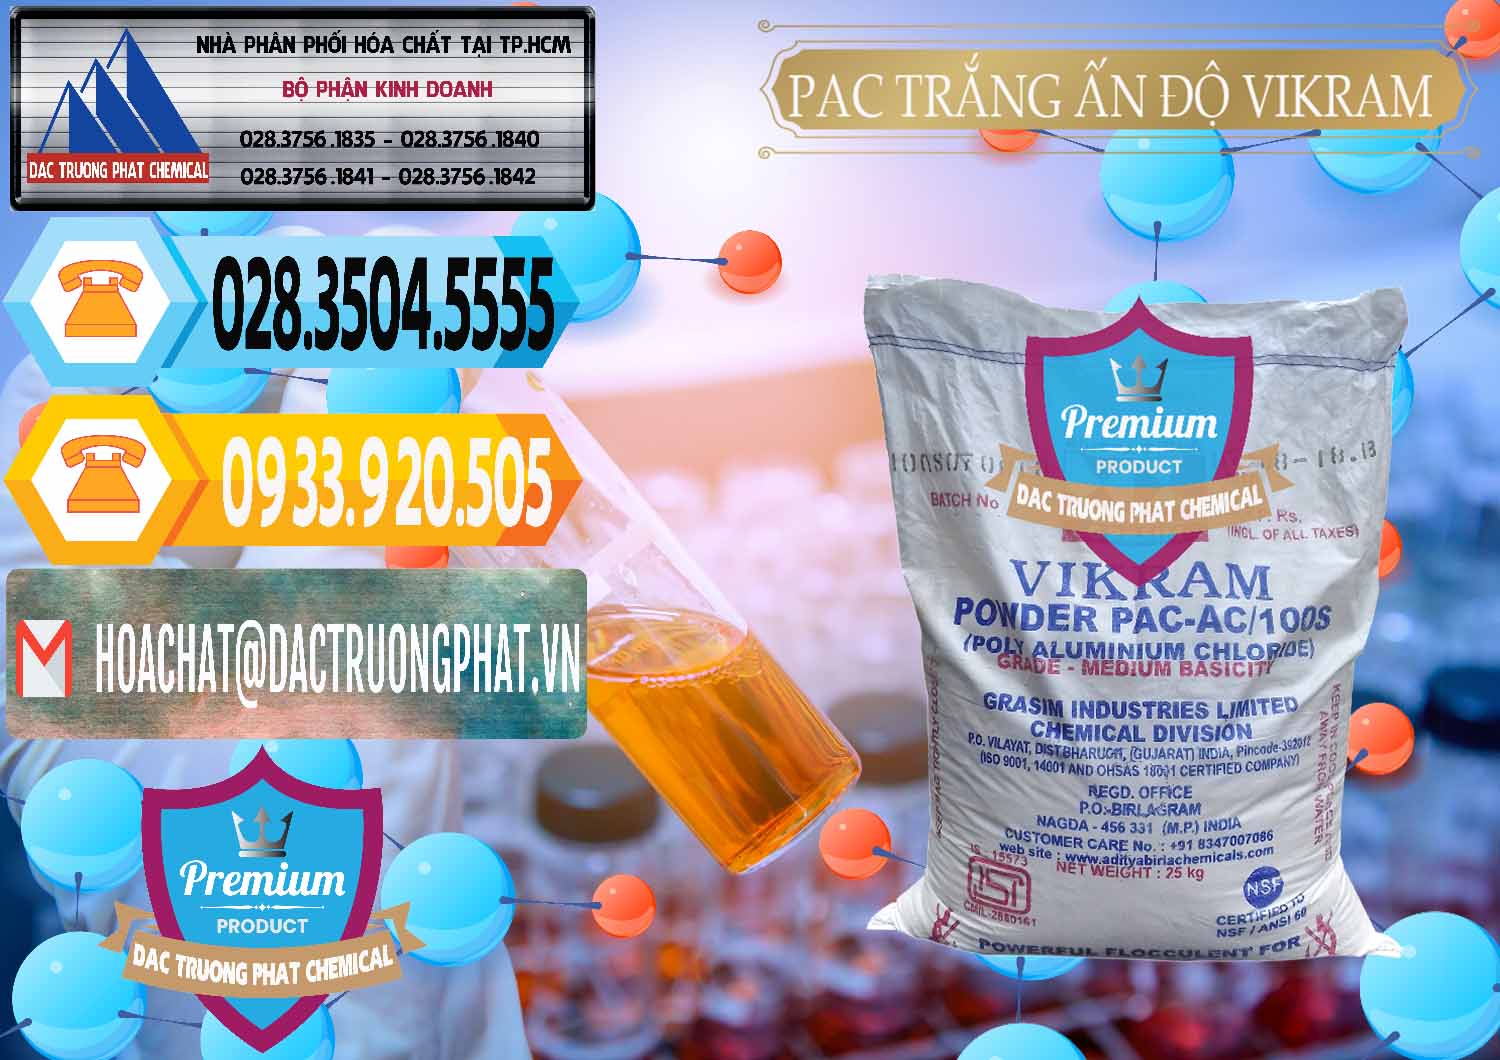 Công ty chuyên cung cấp & bán PAC - Polyaluminium Chloride Ấn Độ India Vikram - 0120 - Bán _ phân phối hóa chất tại TP.HCM - hoachattayrua.net